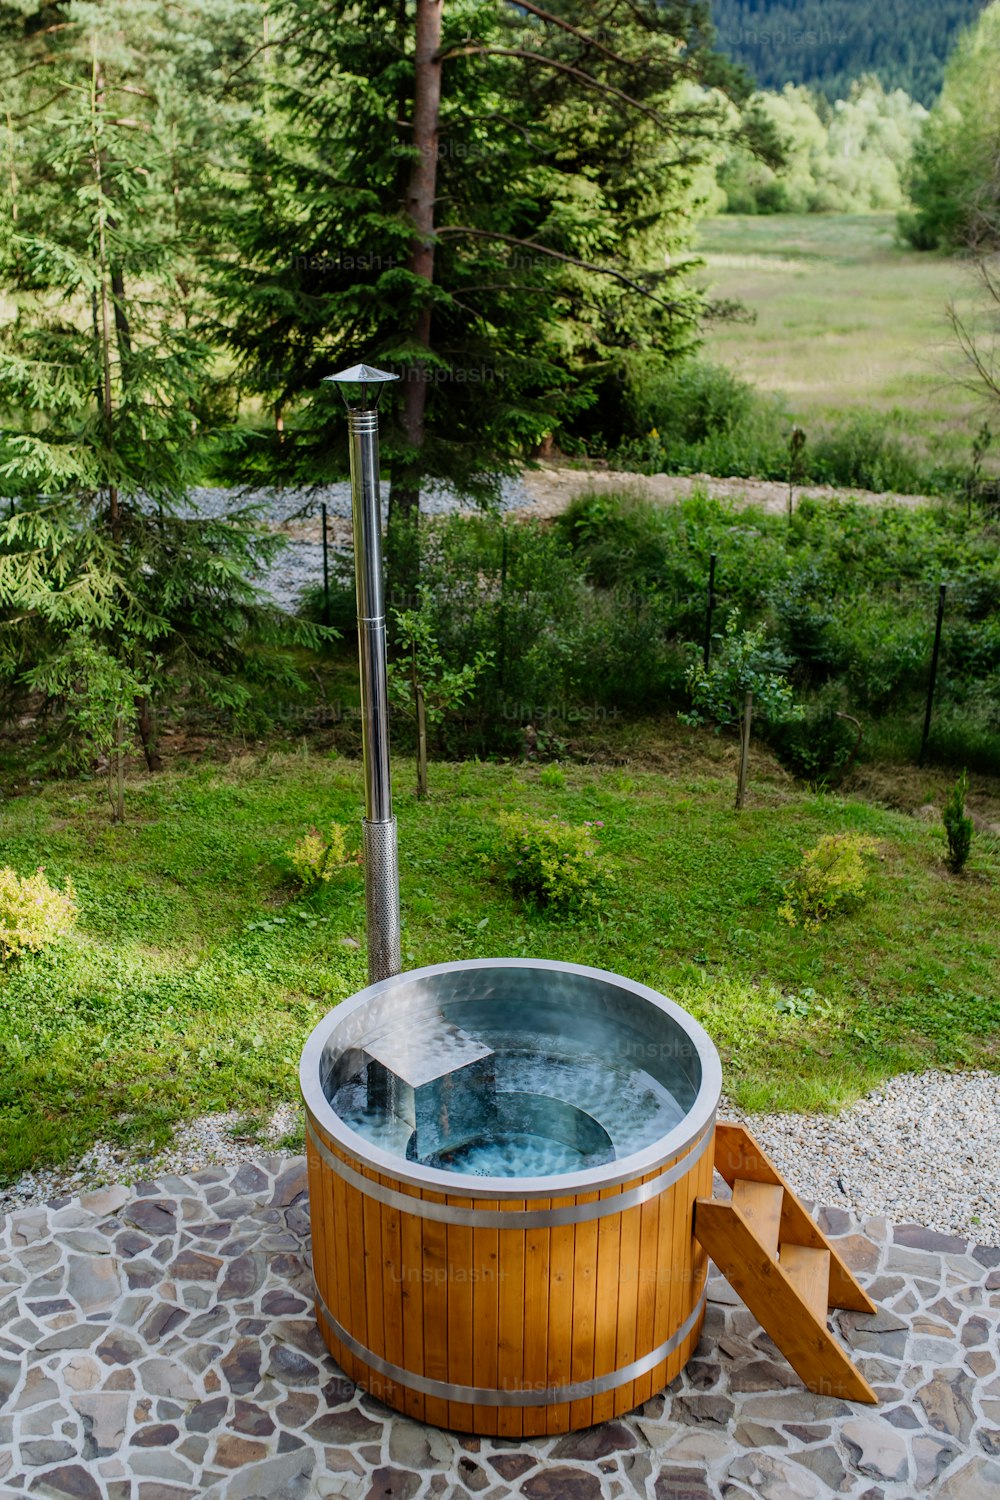 Una vasca da bagno in legno con camino per bruciare legna e riscaldare l'acqua nel cortile in montagna.